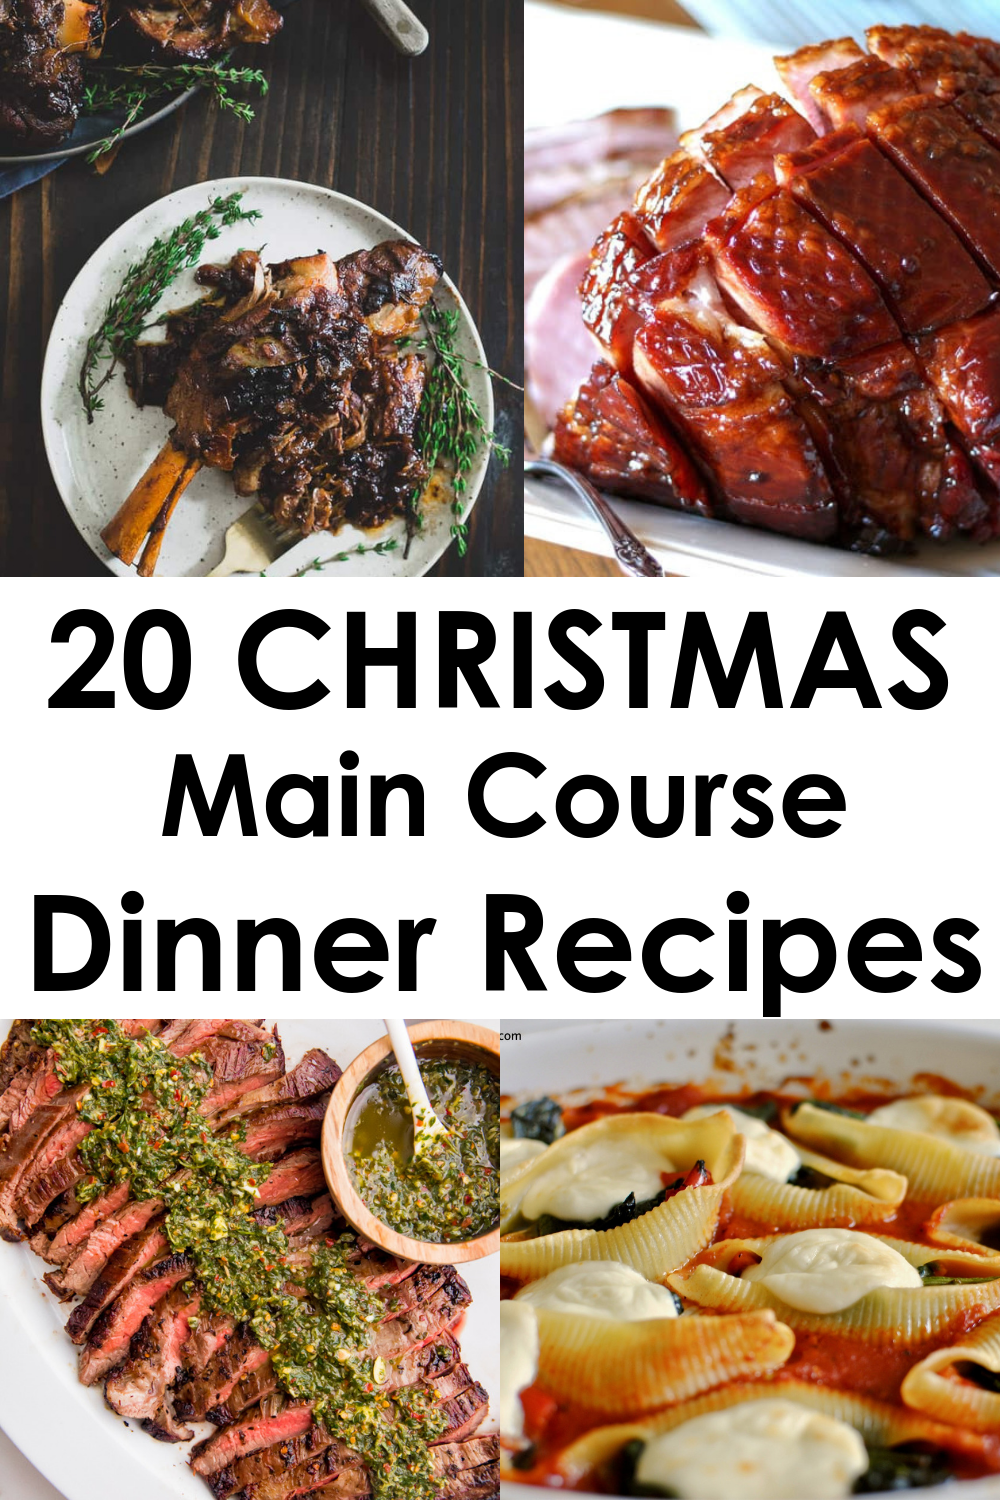 20 Christmas Main Course Dinner Ideas -   18 xmas food dinner easy recipes ideas